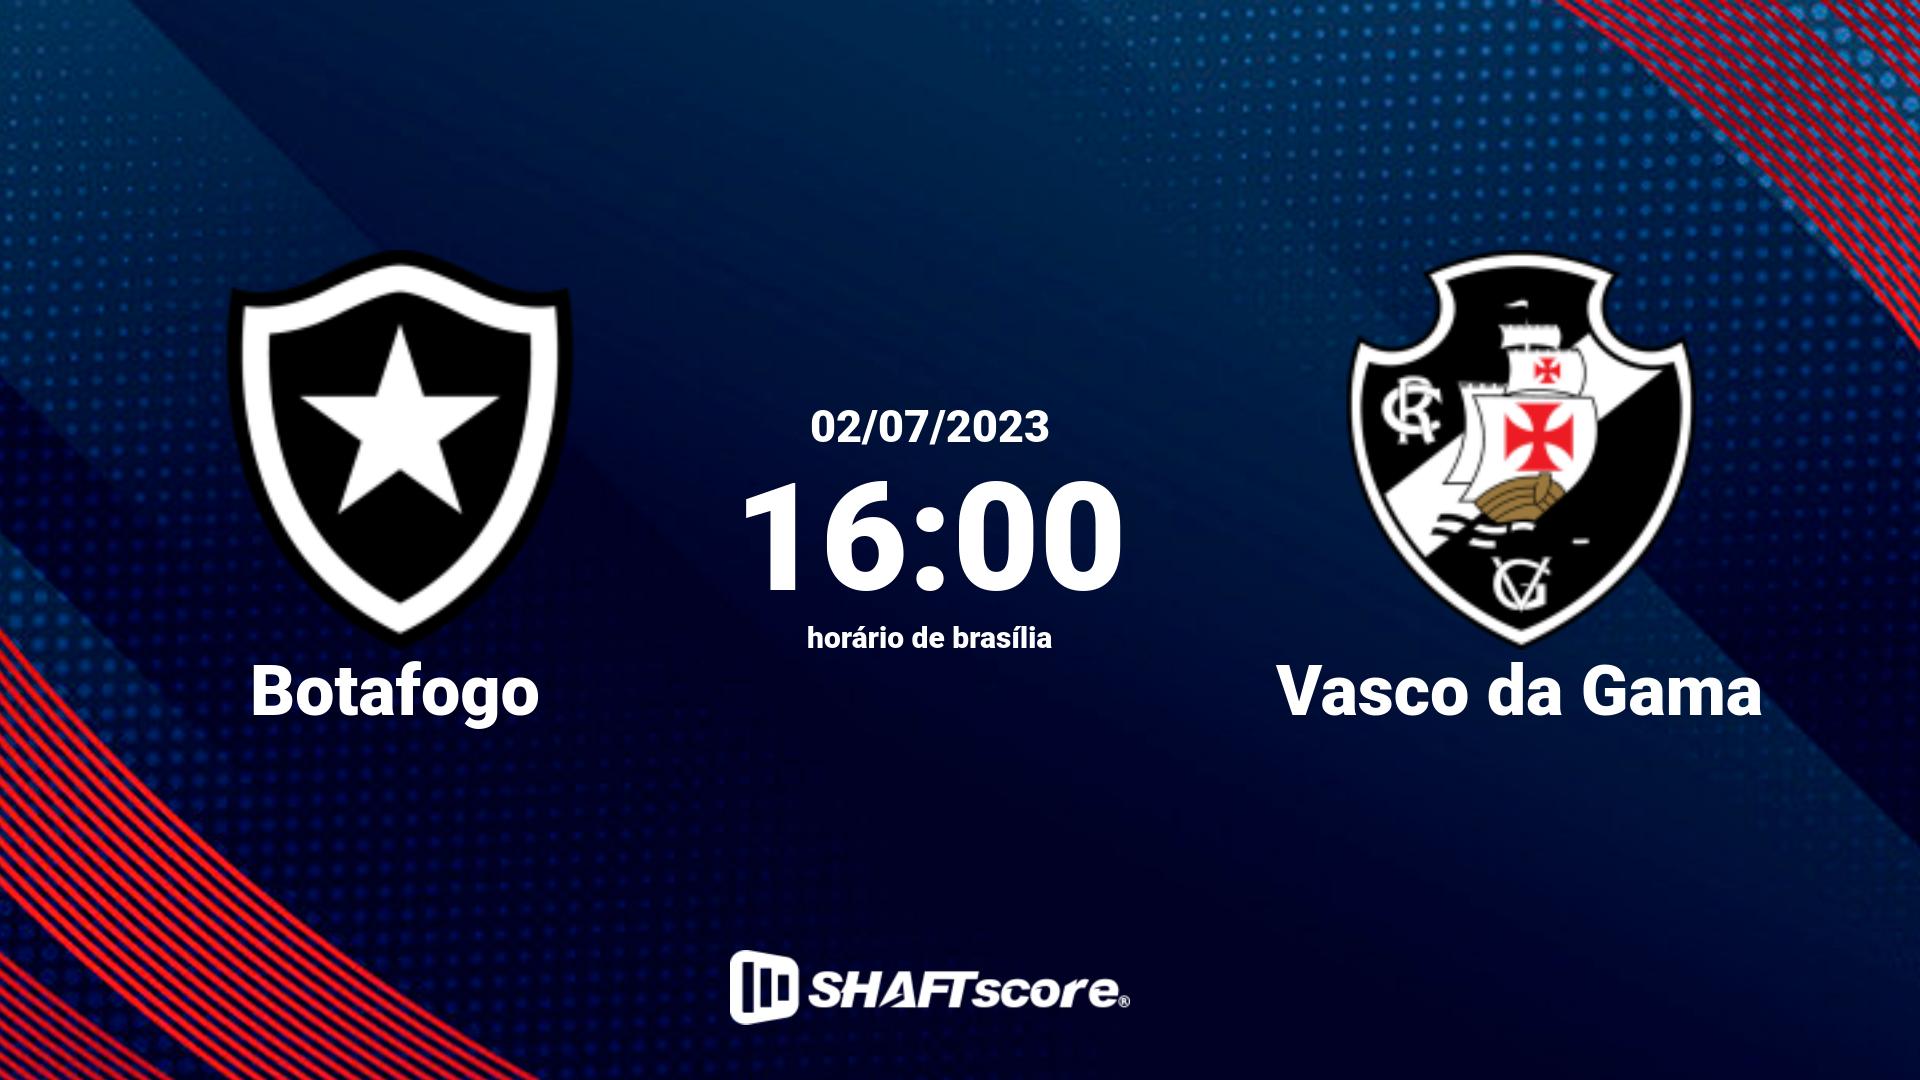 Estatísticas do jogo Botafogo vs Vasco da Gama 02.07 16:00